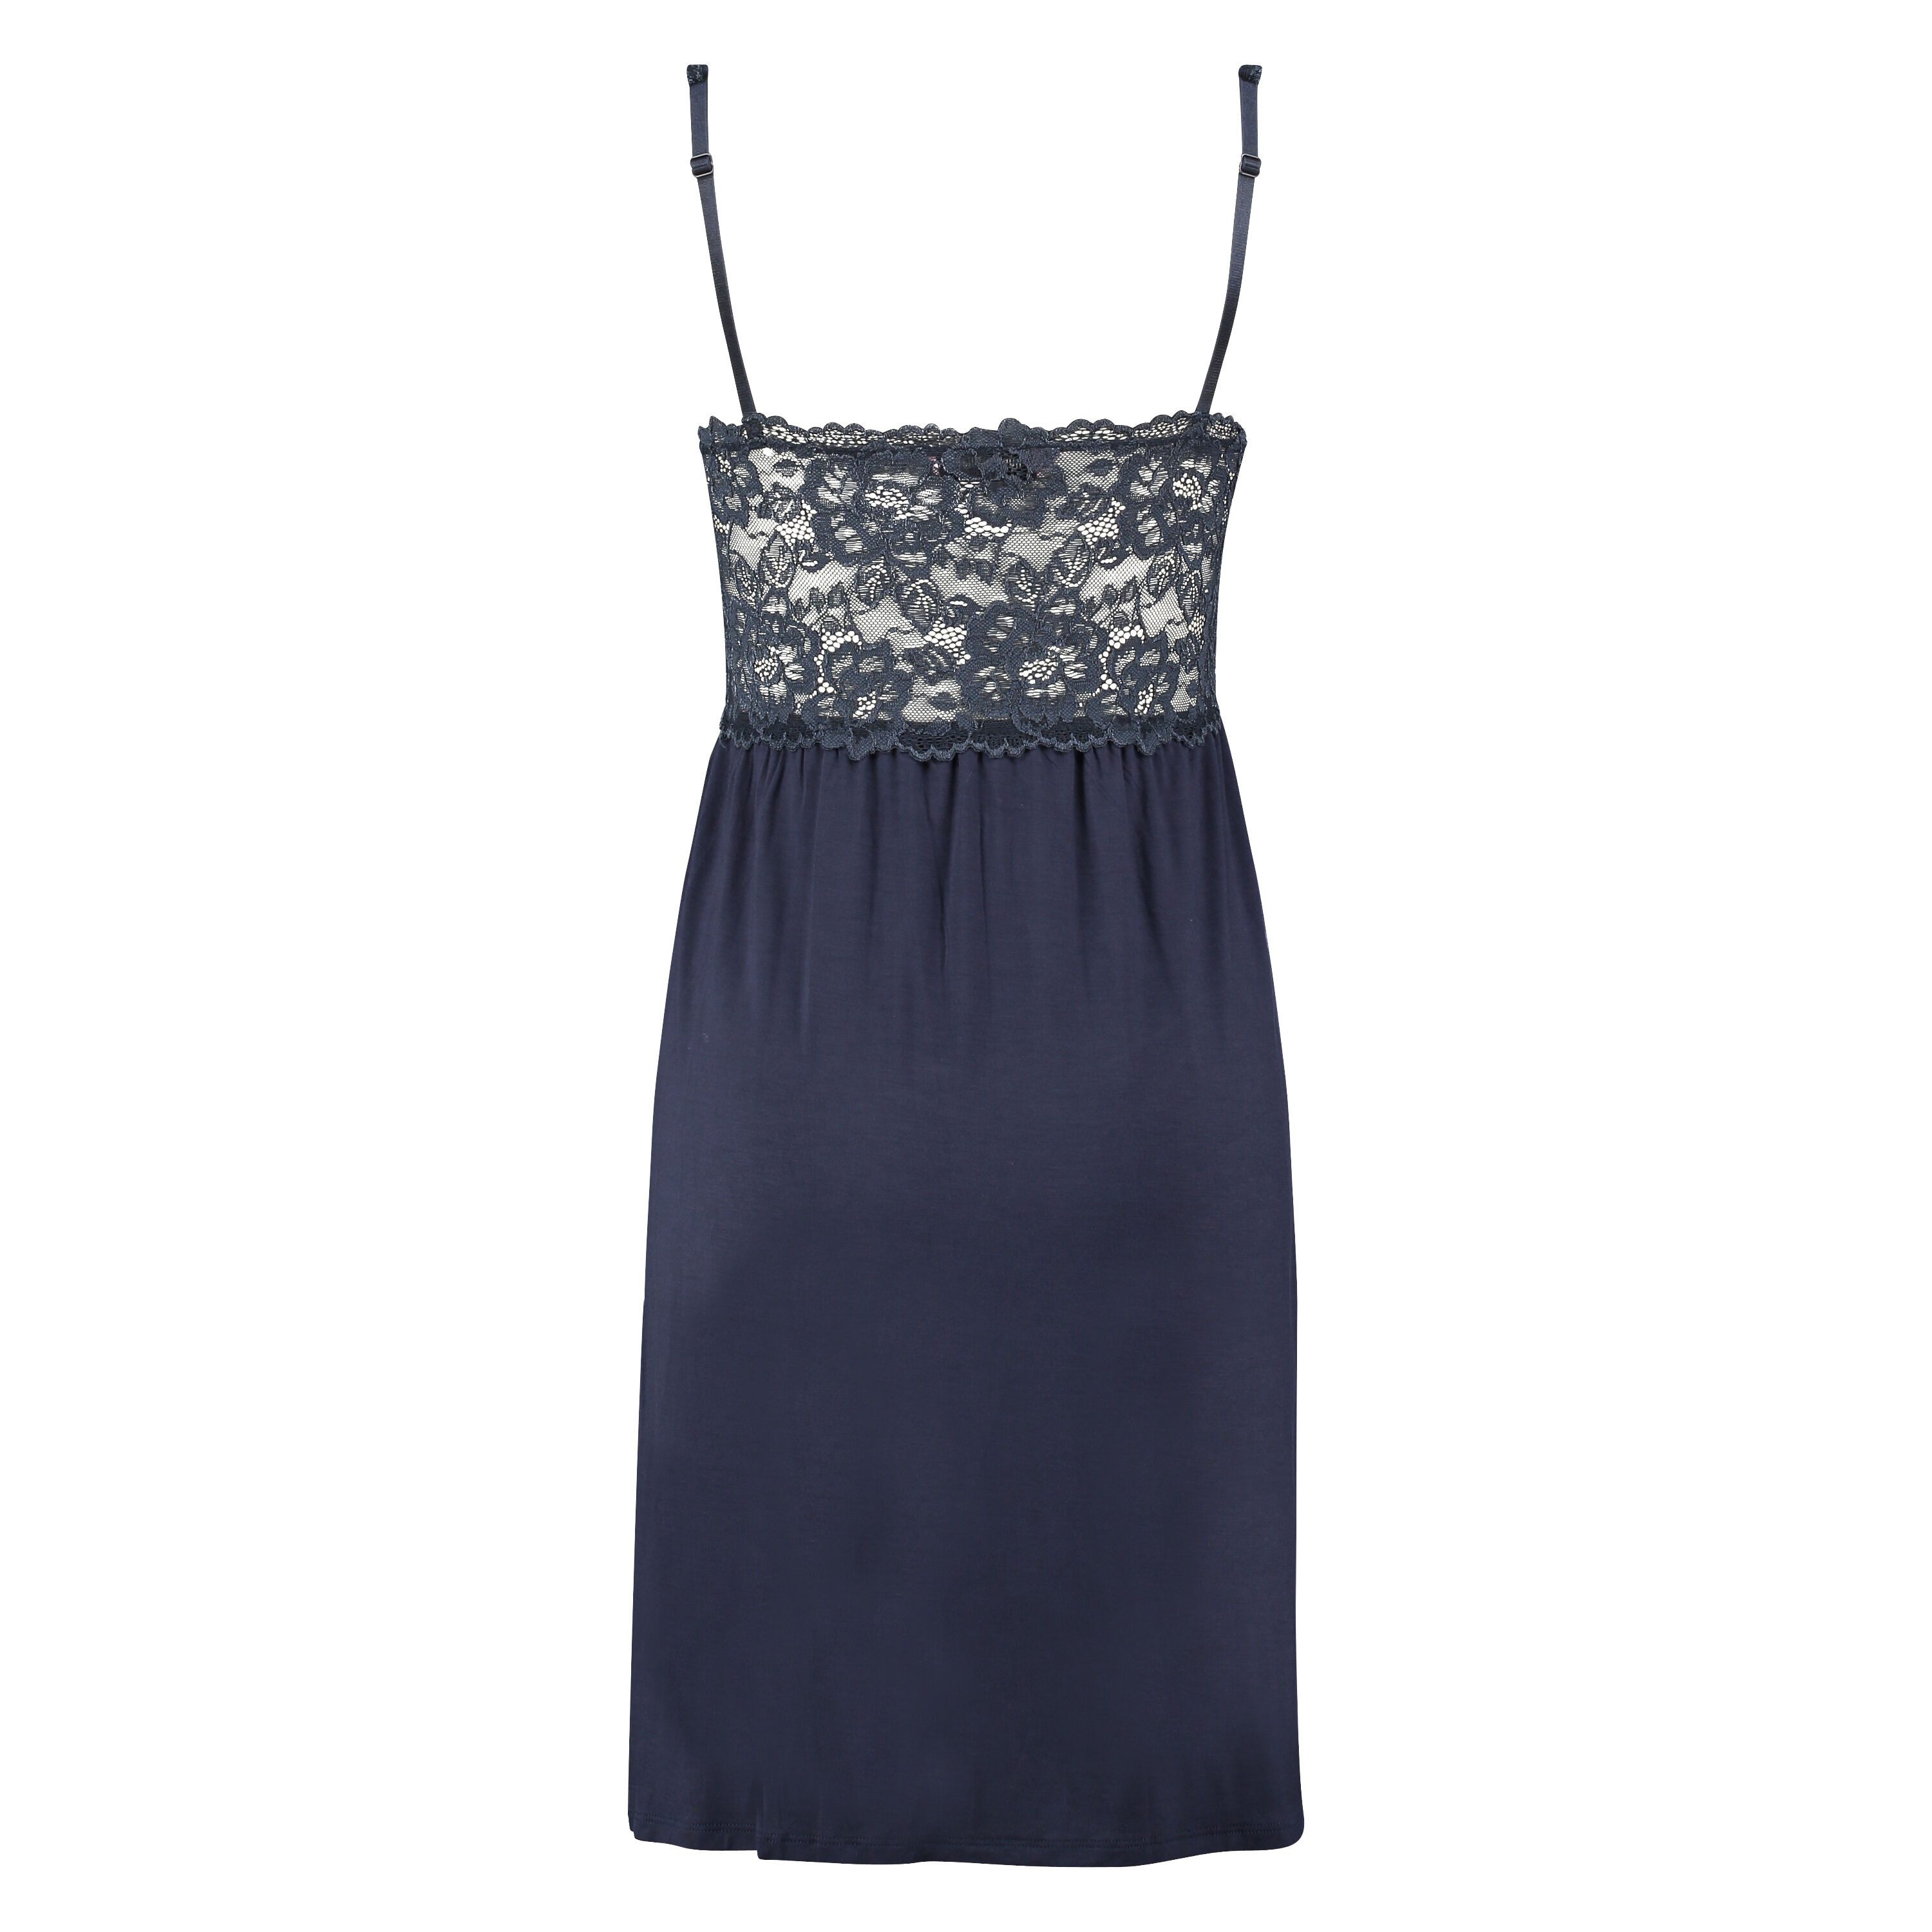 Modal Lace Slip Dress for €15 - Slip ...